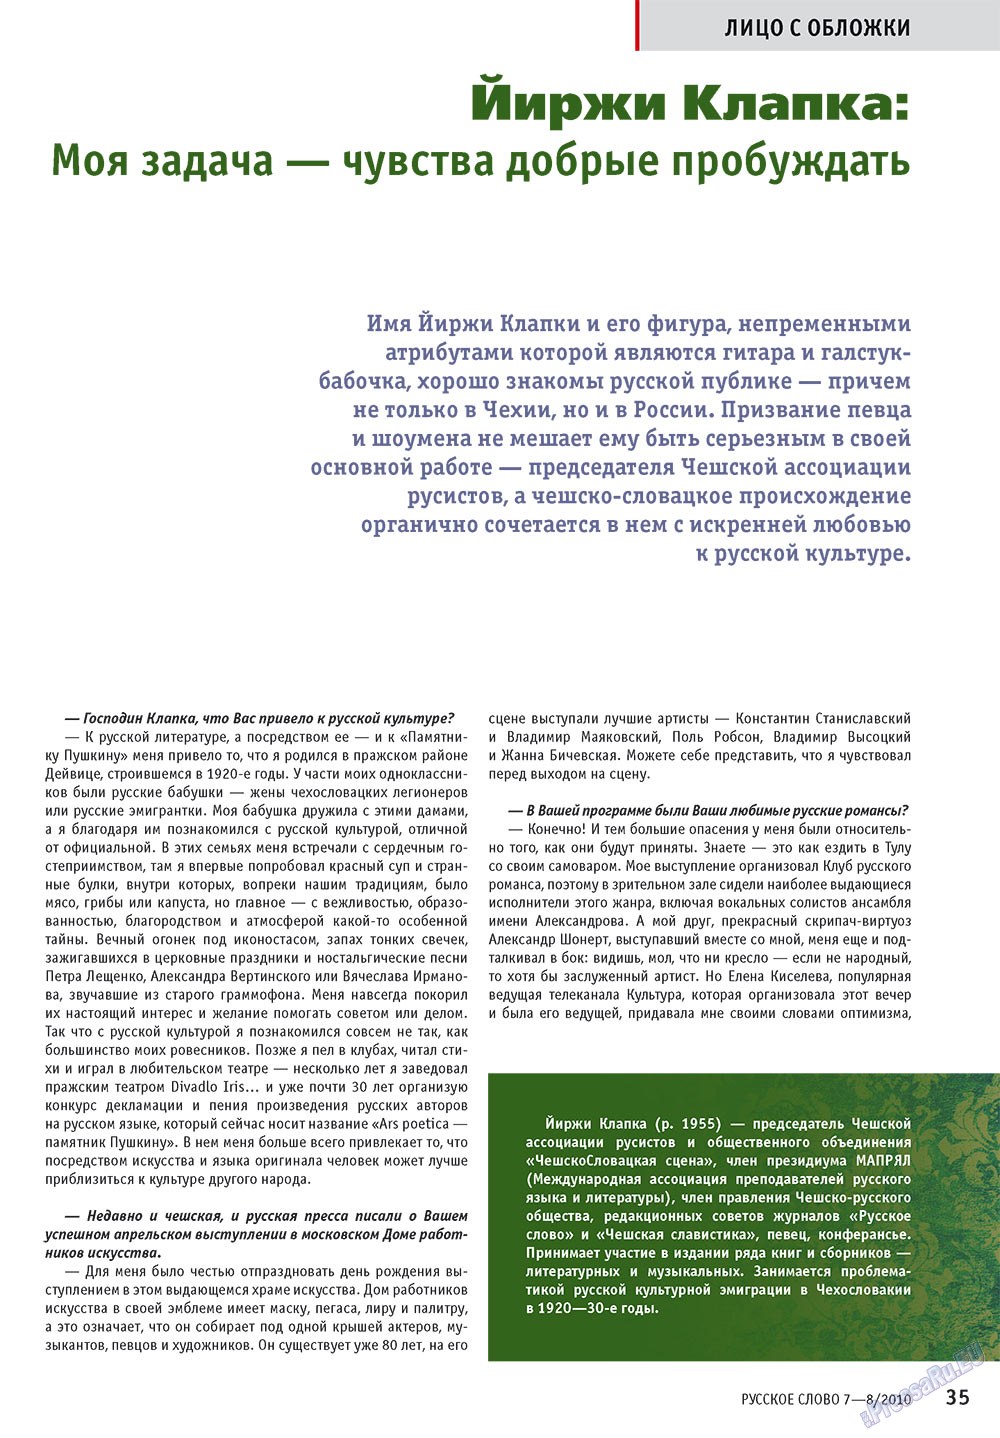 Русское слово, журнал. 2010 №7 стр.37